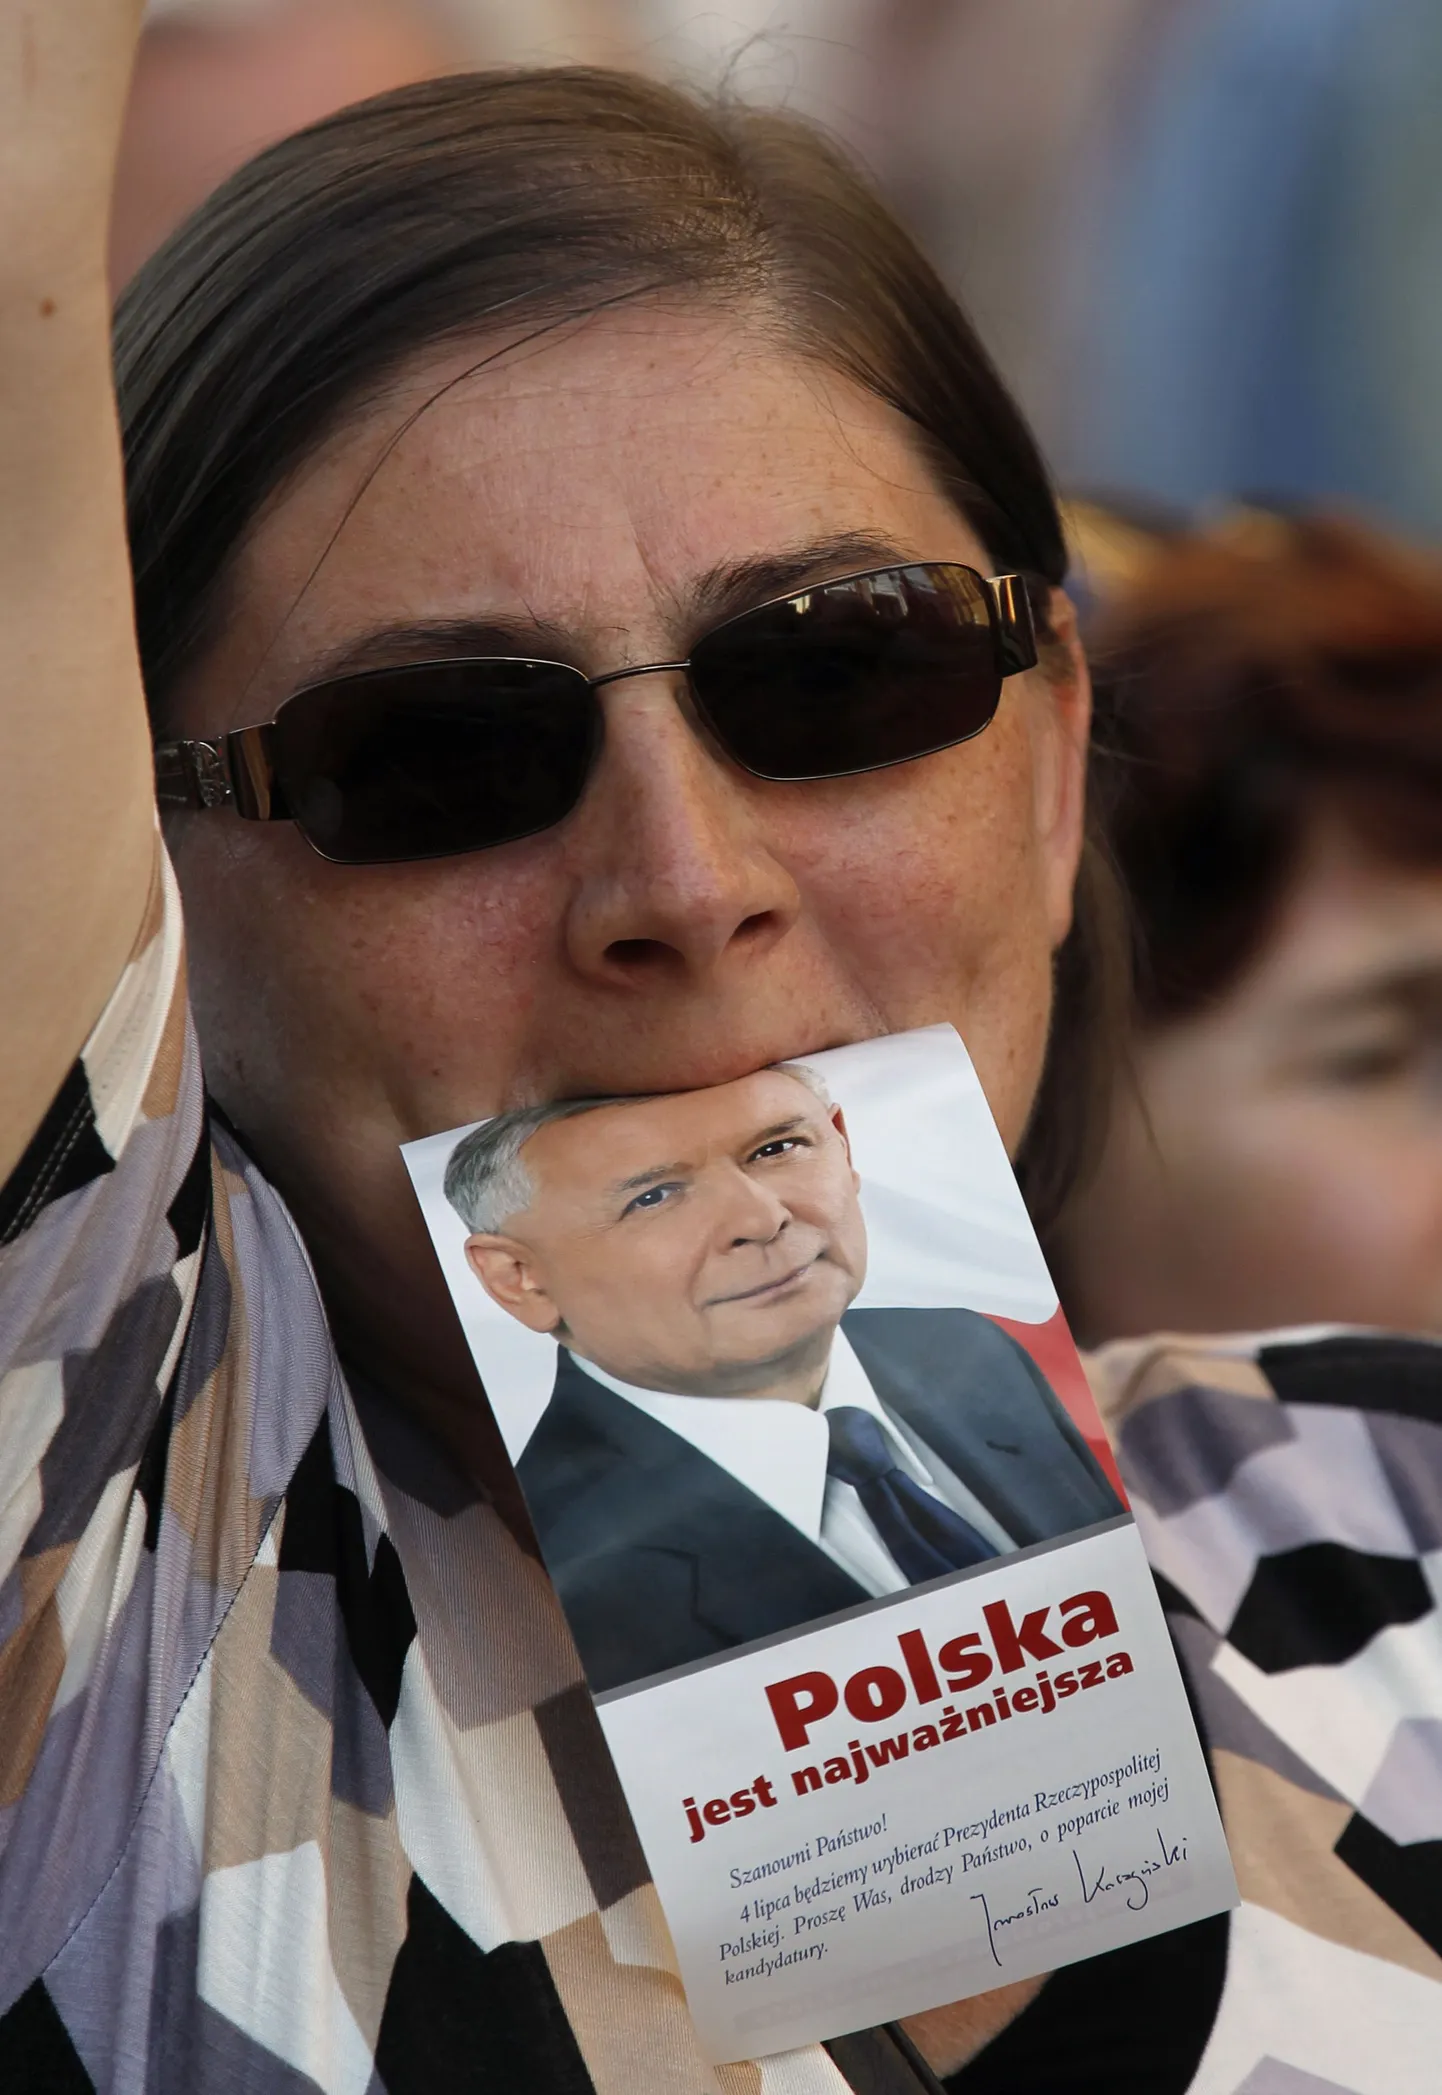 Женщина с предвыборной рекламой кандидата в президенты Польши Ярослава Качиньского.